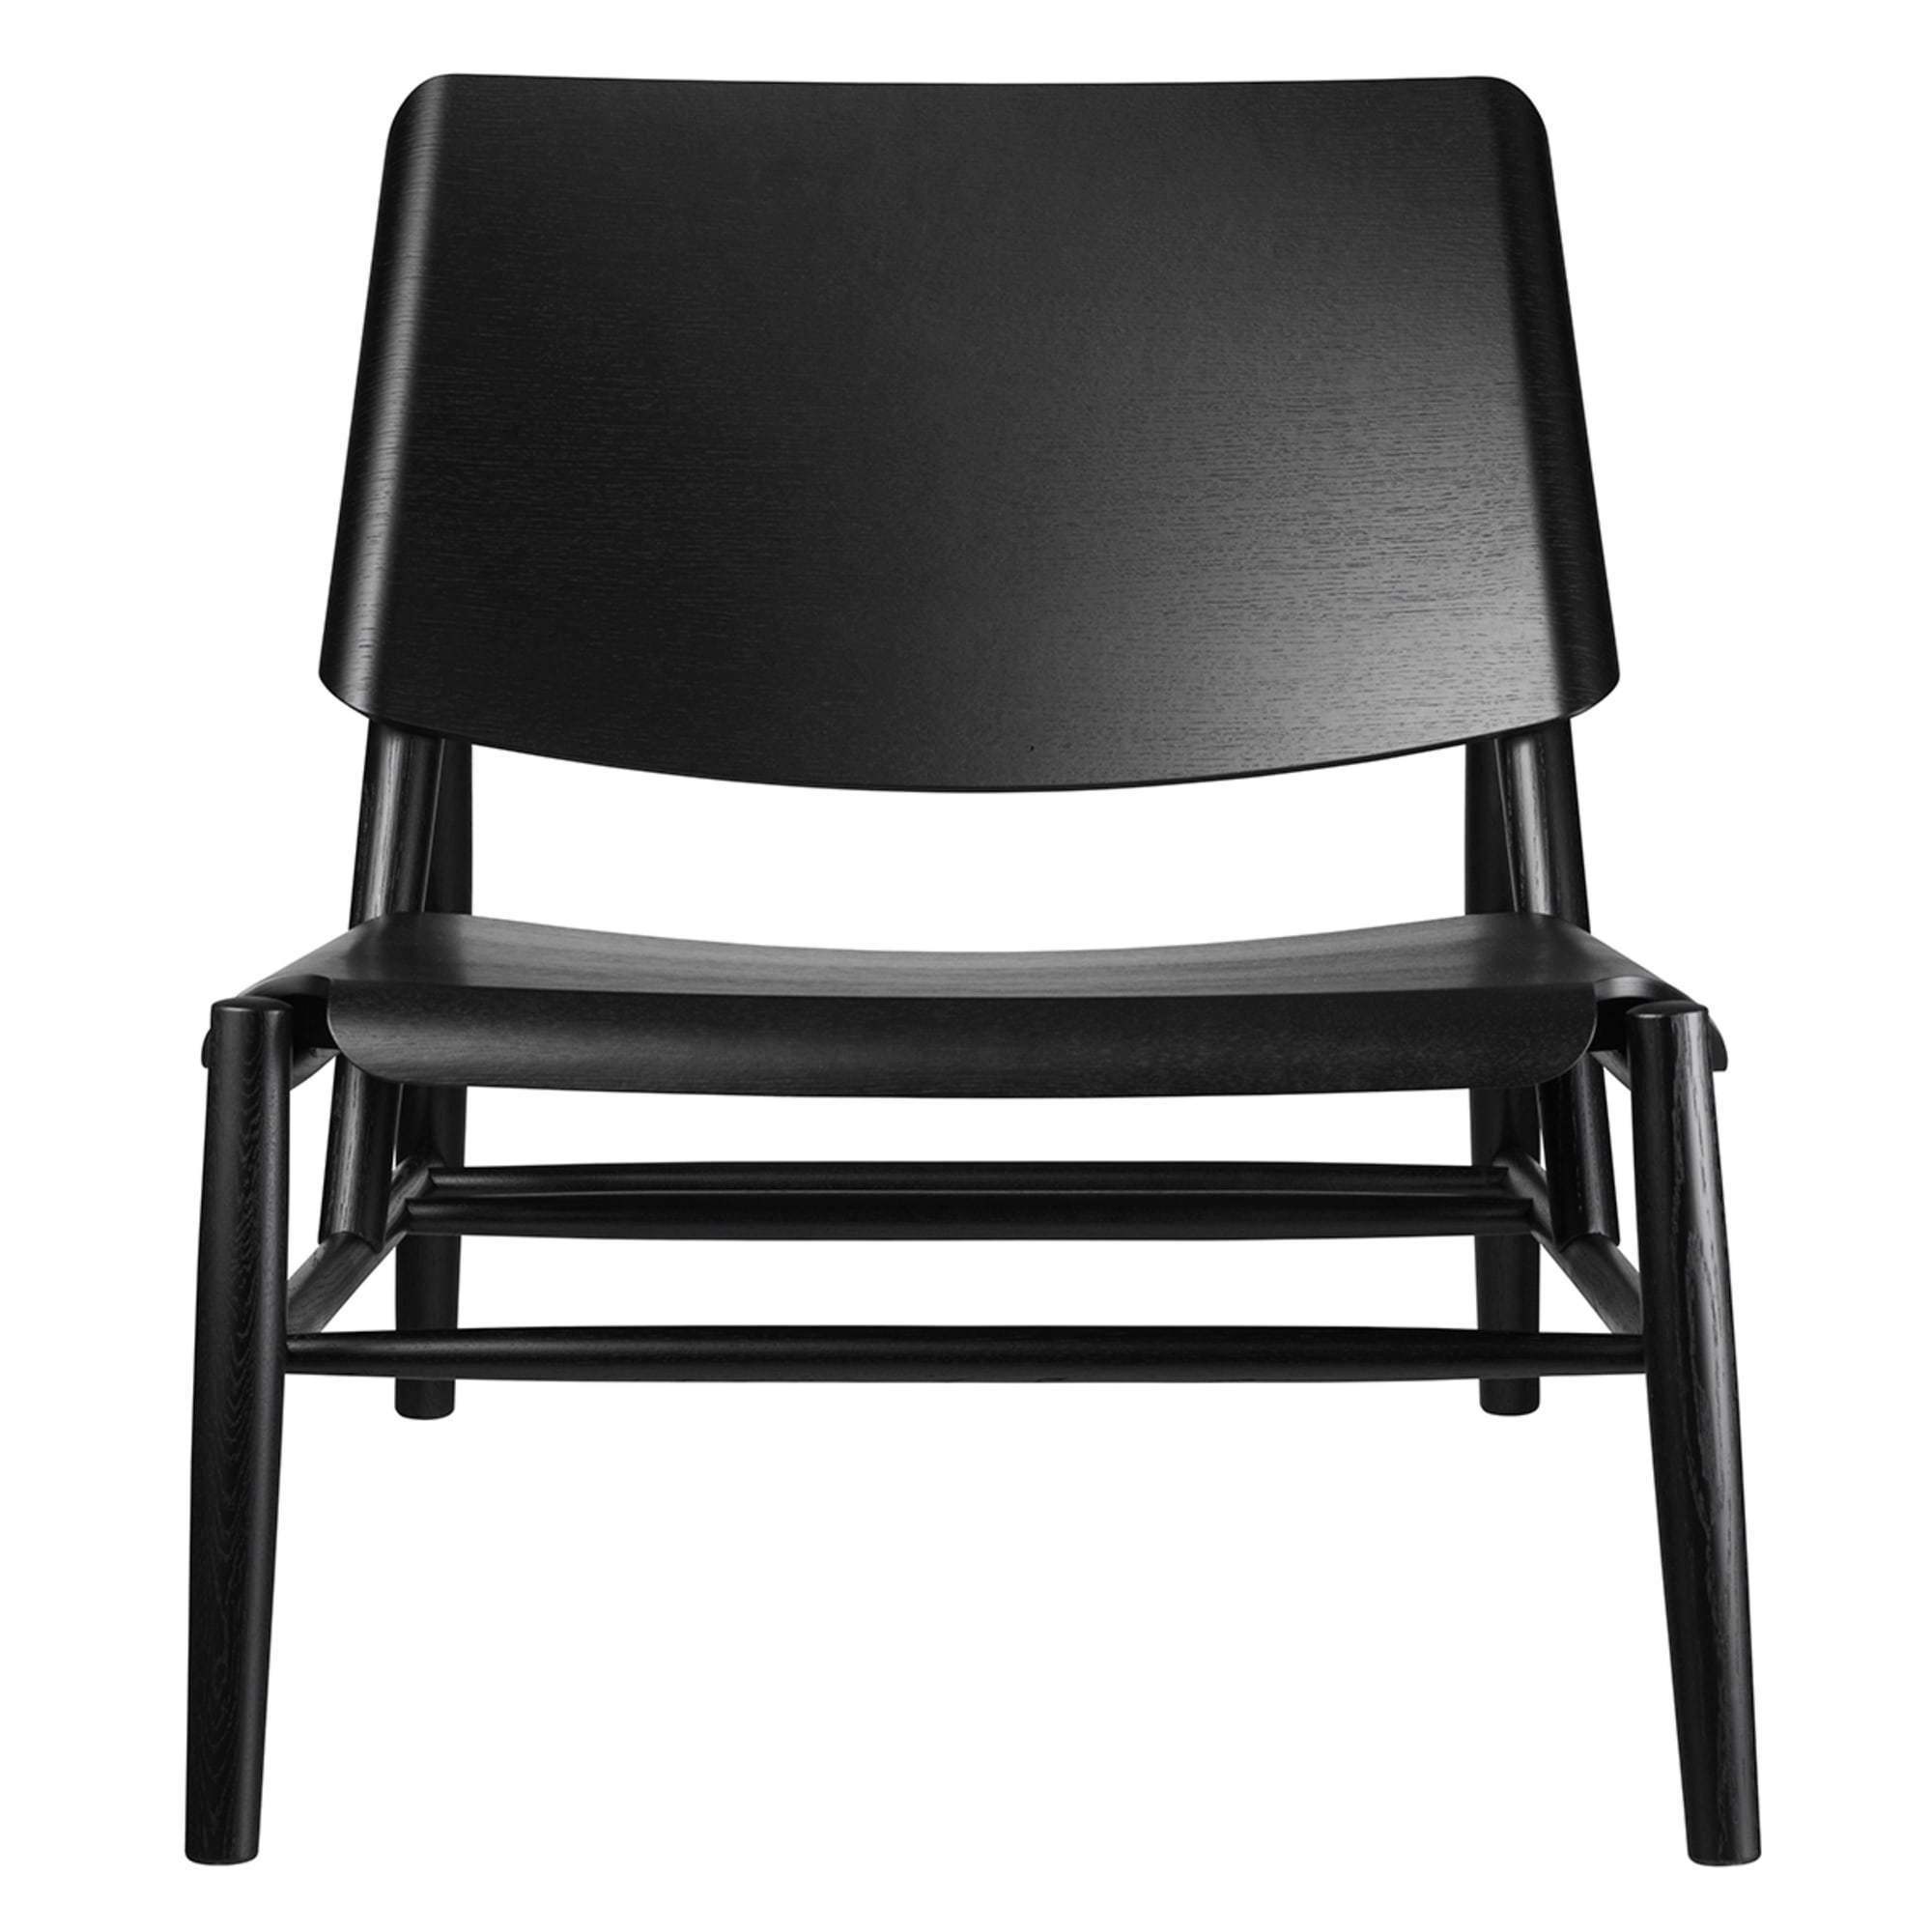 Fdb Møbler J162 Paso Hunting Chair, Black